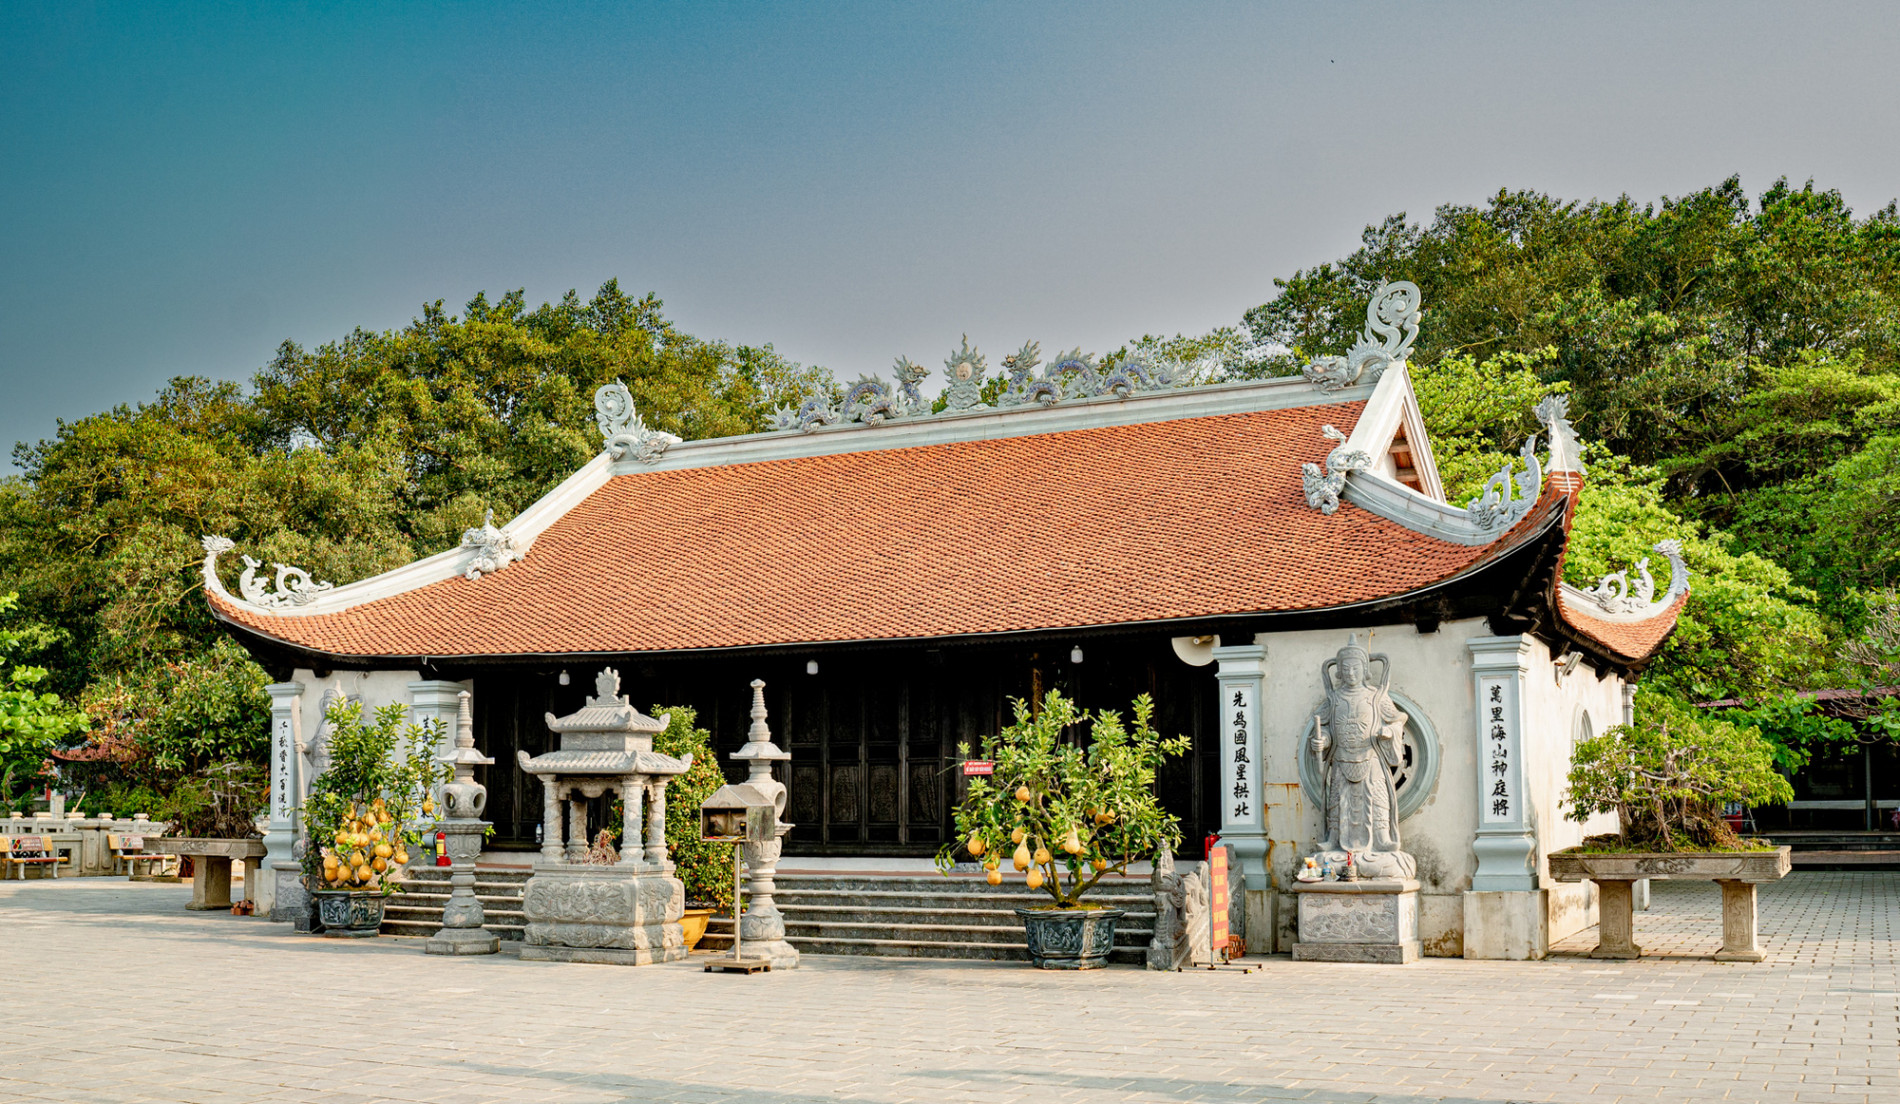 Khám phá đảo bé hạt tiêu có hải đăng cổ nhất Việt Nam, 124 năm vững vàng trước sóng gió - Ảnh 9.